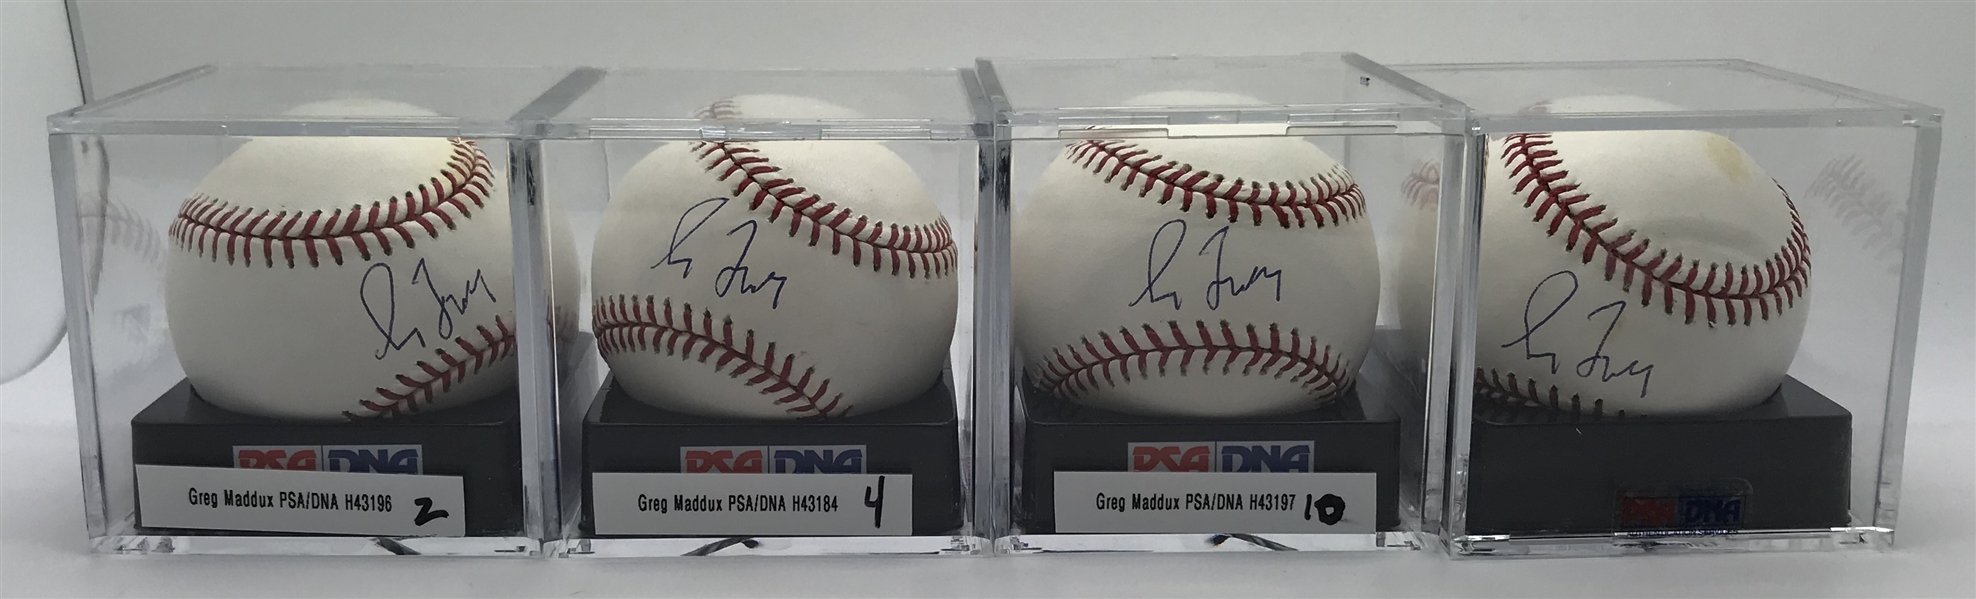 Lot of Four (4) Greg Maddux Signed OML Baseballs PSA/DNA Graded MINT+ 9.5!